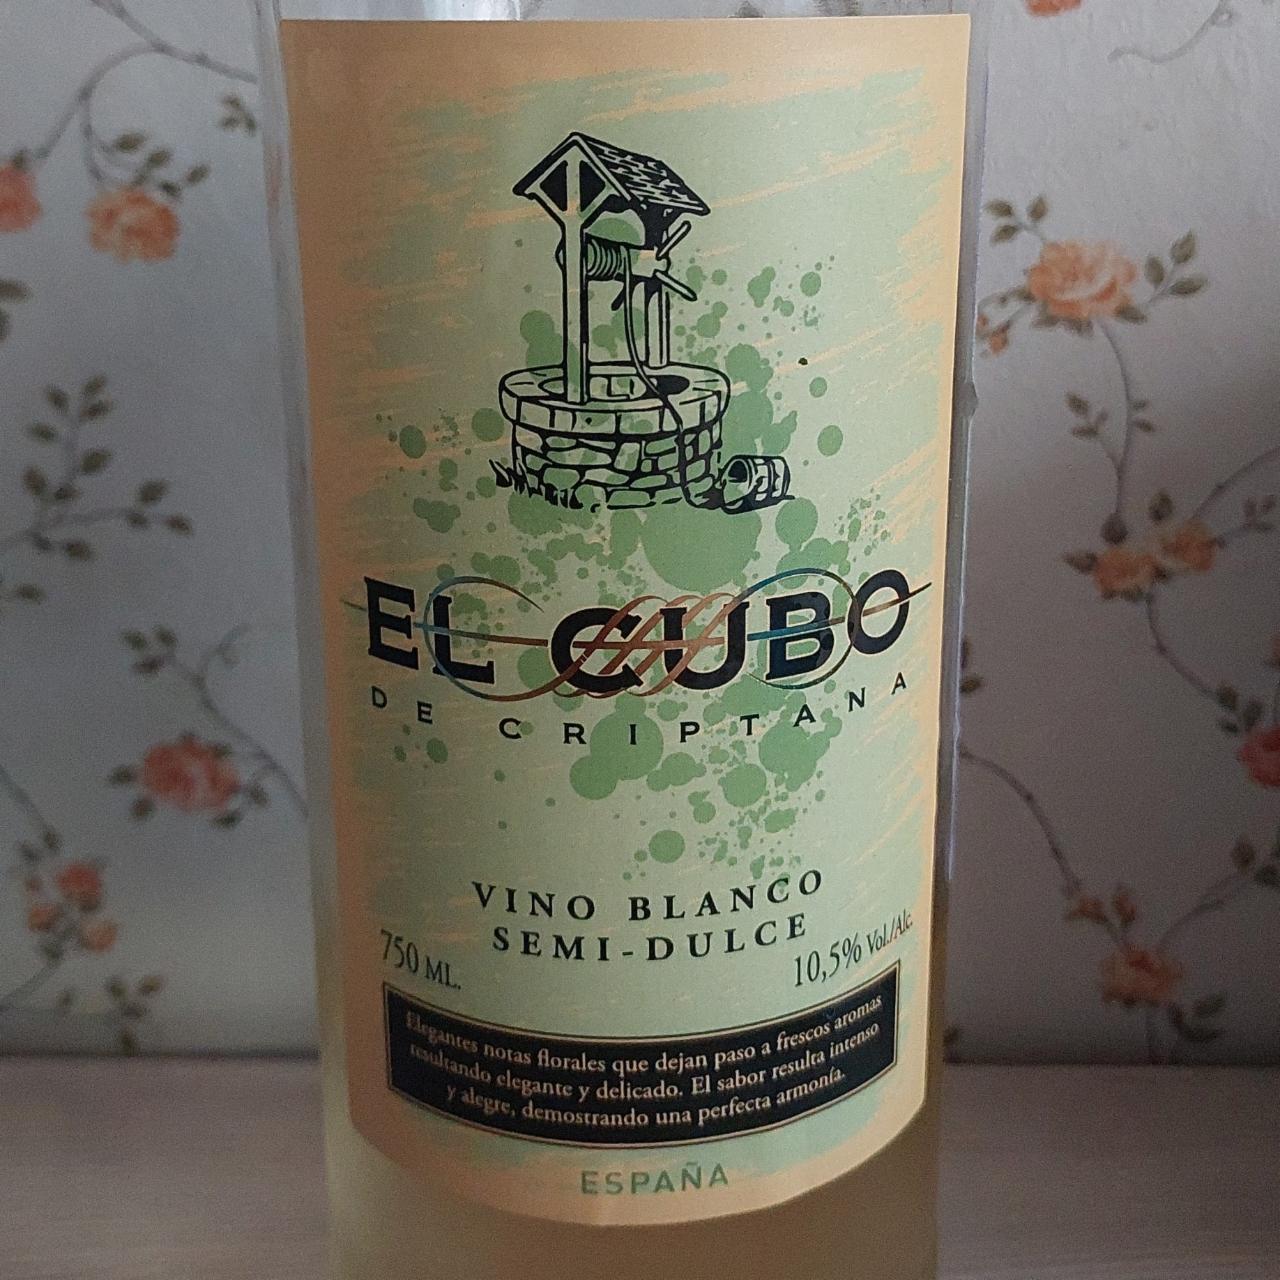 Фото - Вино белое полусладкое Эль Кубо Де Криптана 10.5% El Cubo de Criptana